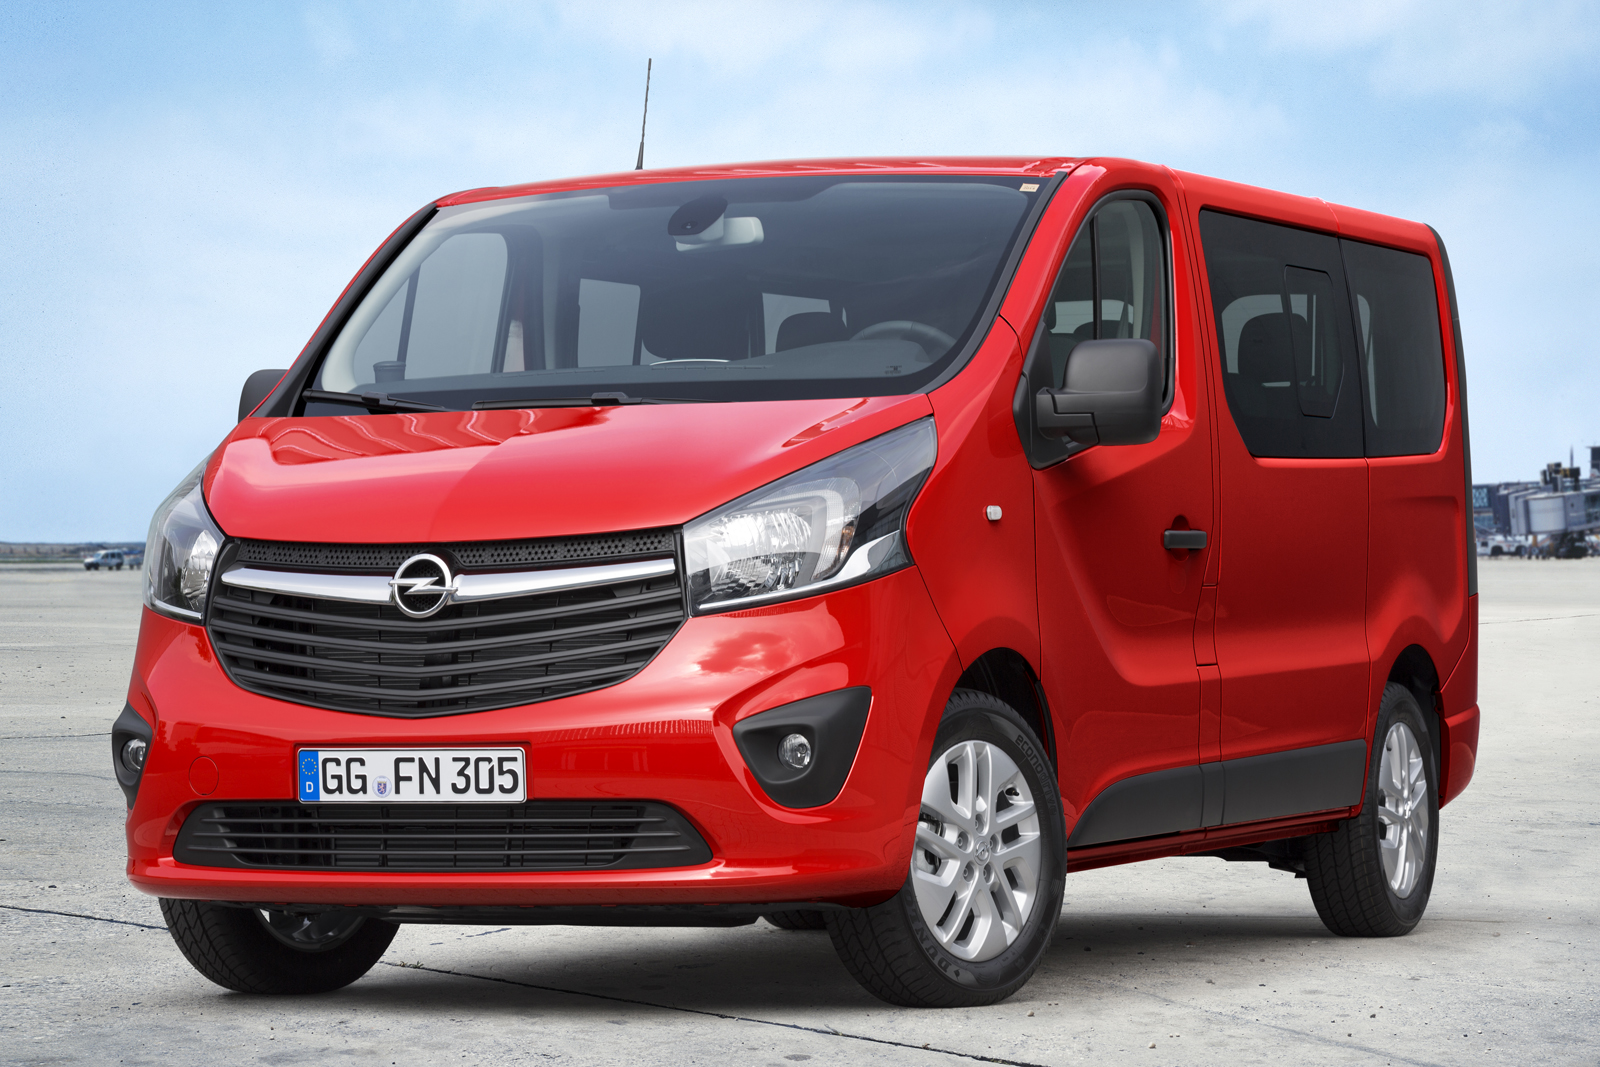 Opel Vivaro gets Combi Version for Passenger Transport